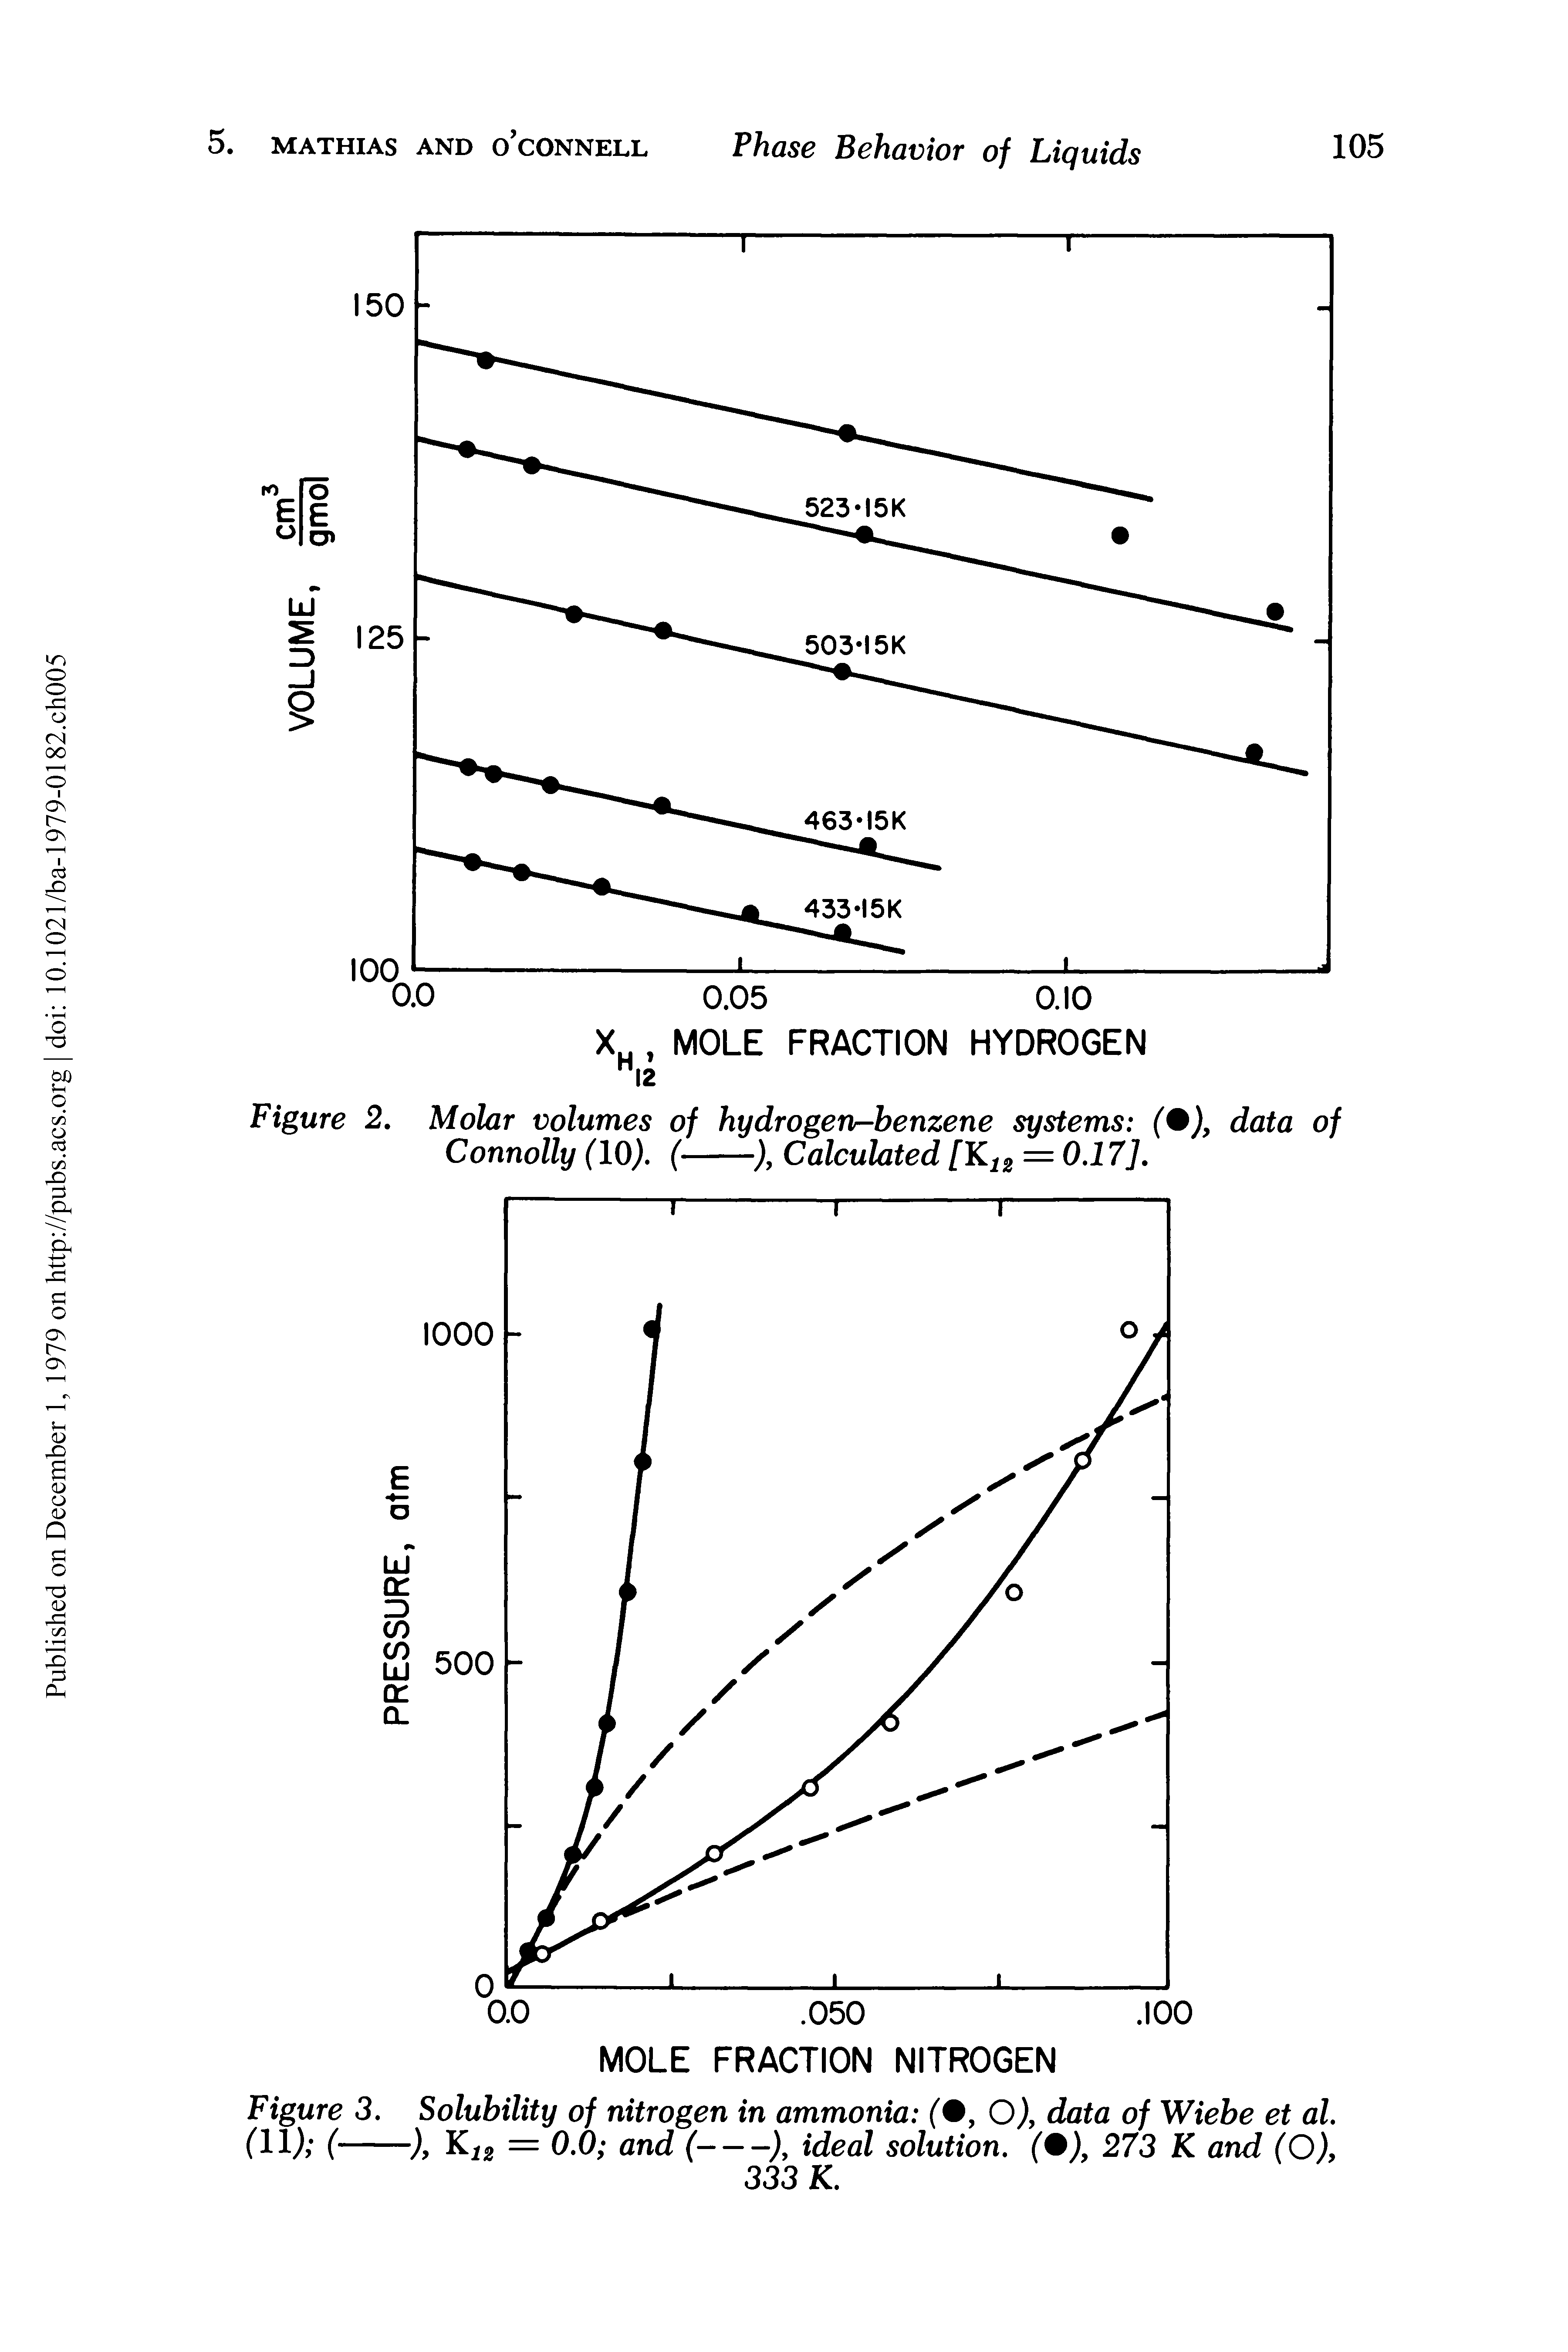 Figure 3. Solubility of nitrogen in ammonia (, O), data of Wiebe et al.